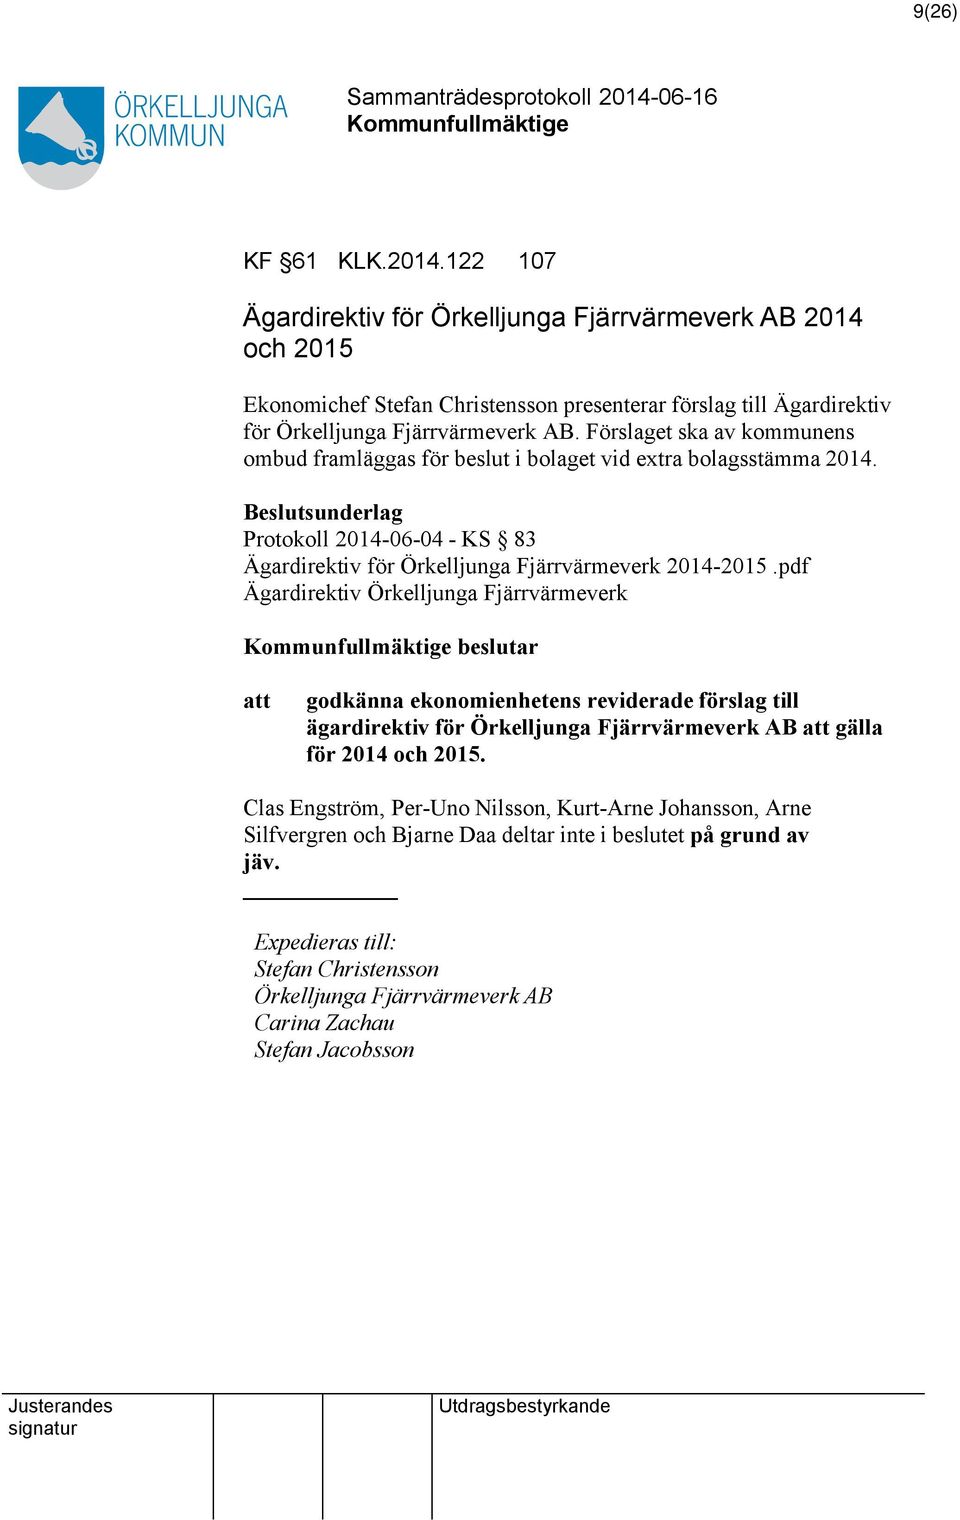 Förslaget ska av kommunens ombud framläggas för beslut i bolaget vid extra bolagsstämma 2014. Protokoll 2014-06-04 - KS 83 Ägardirektiv för Örkelljunga Fjärrvärmeverk 2014-2015.